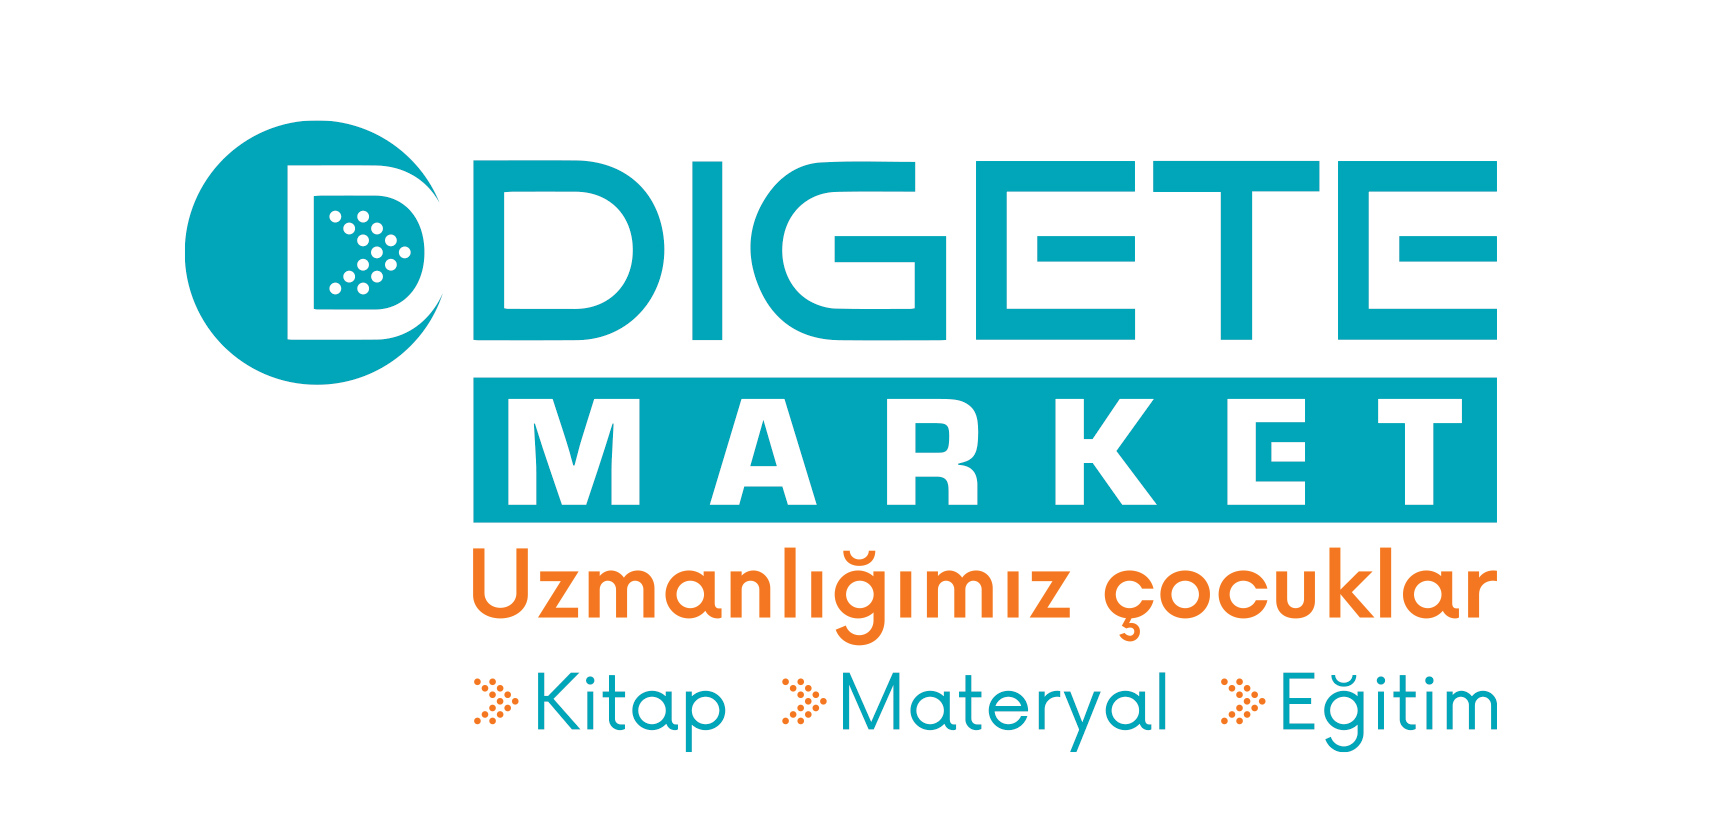 DigeteMarket